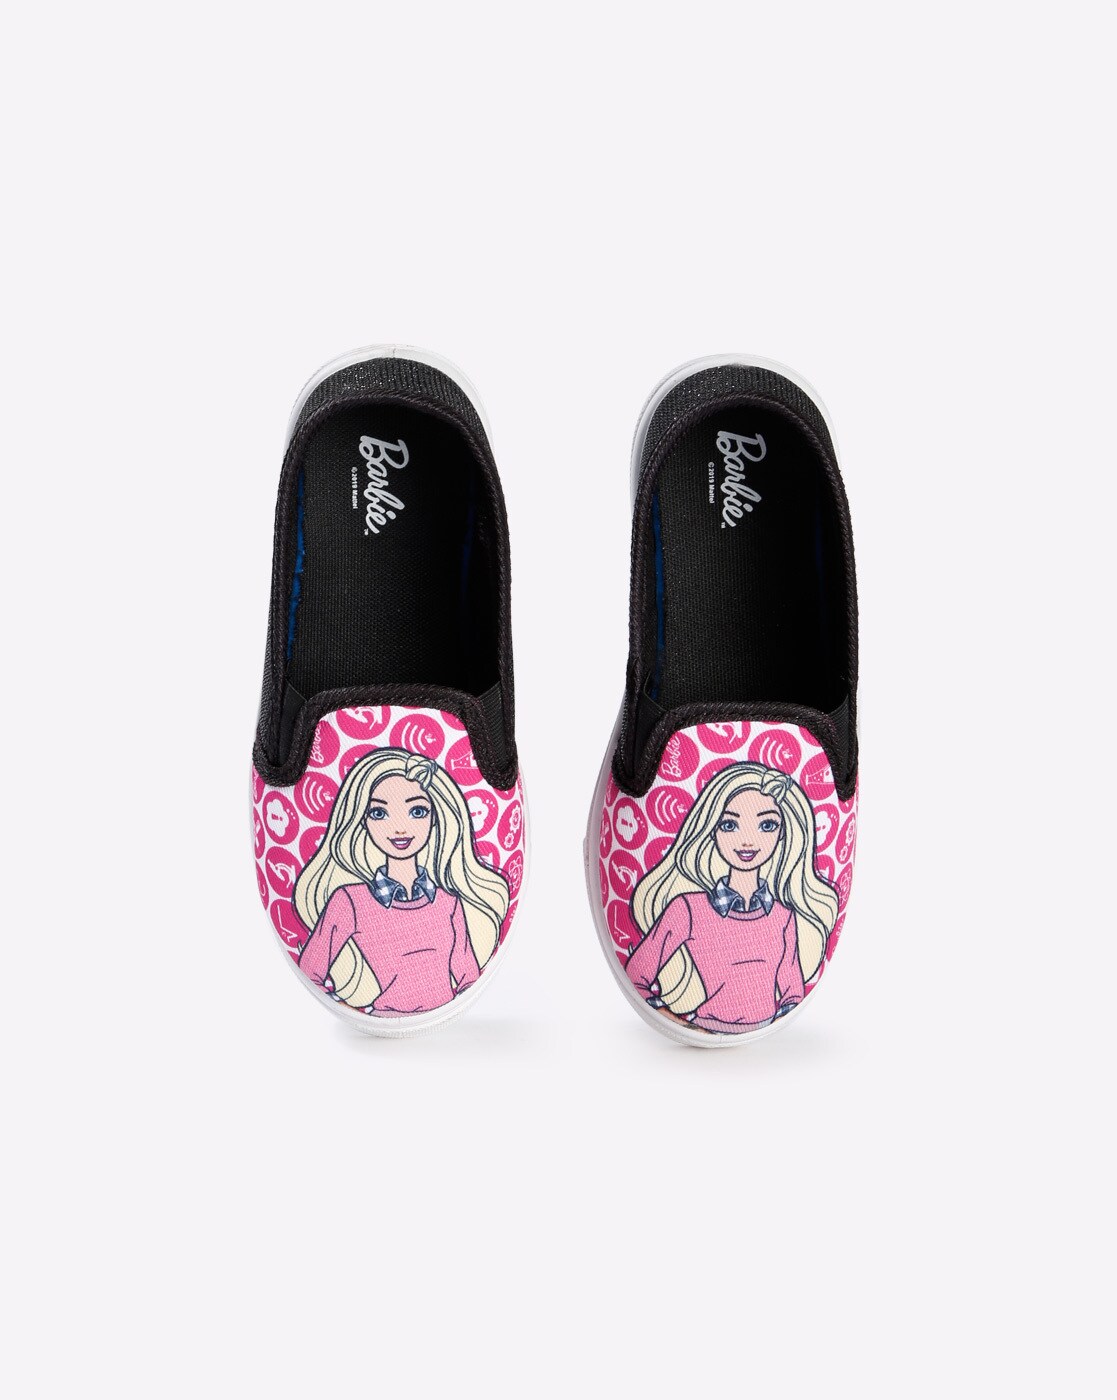 pink plimsolls sneakers